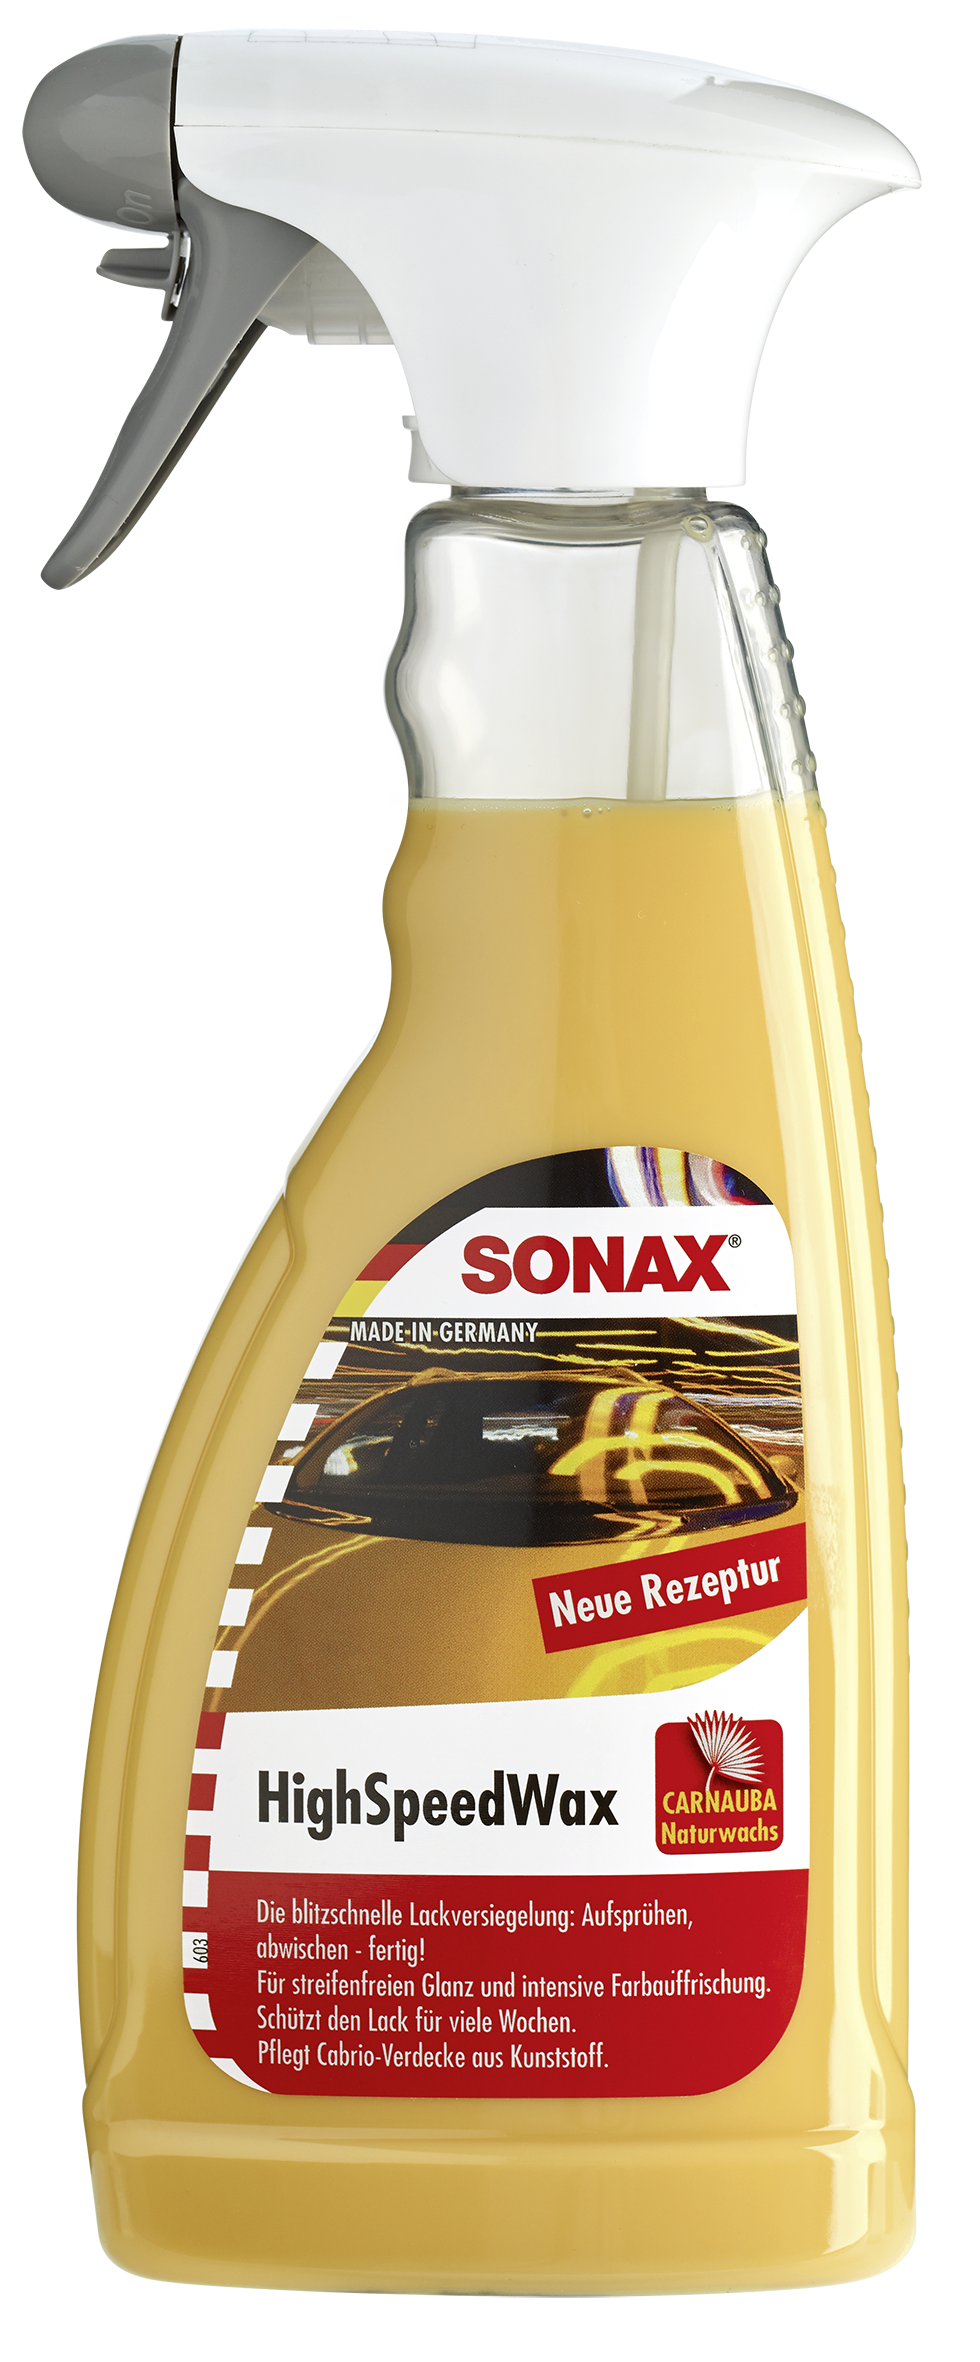 Sonax High Speed Wax